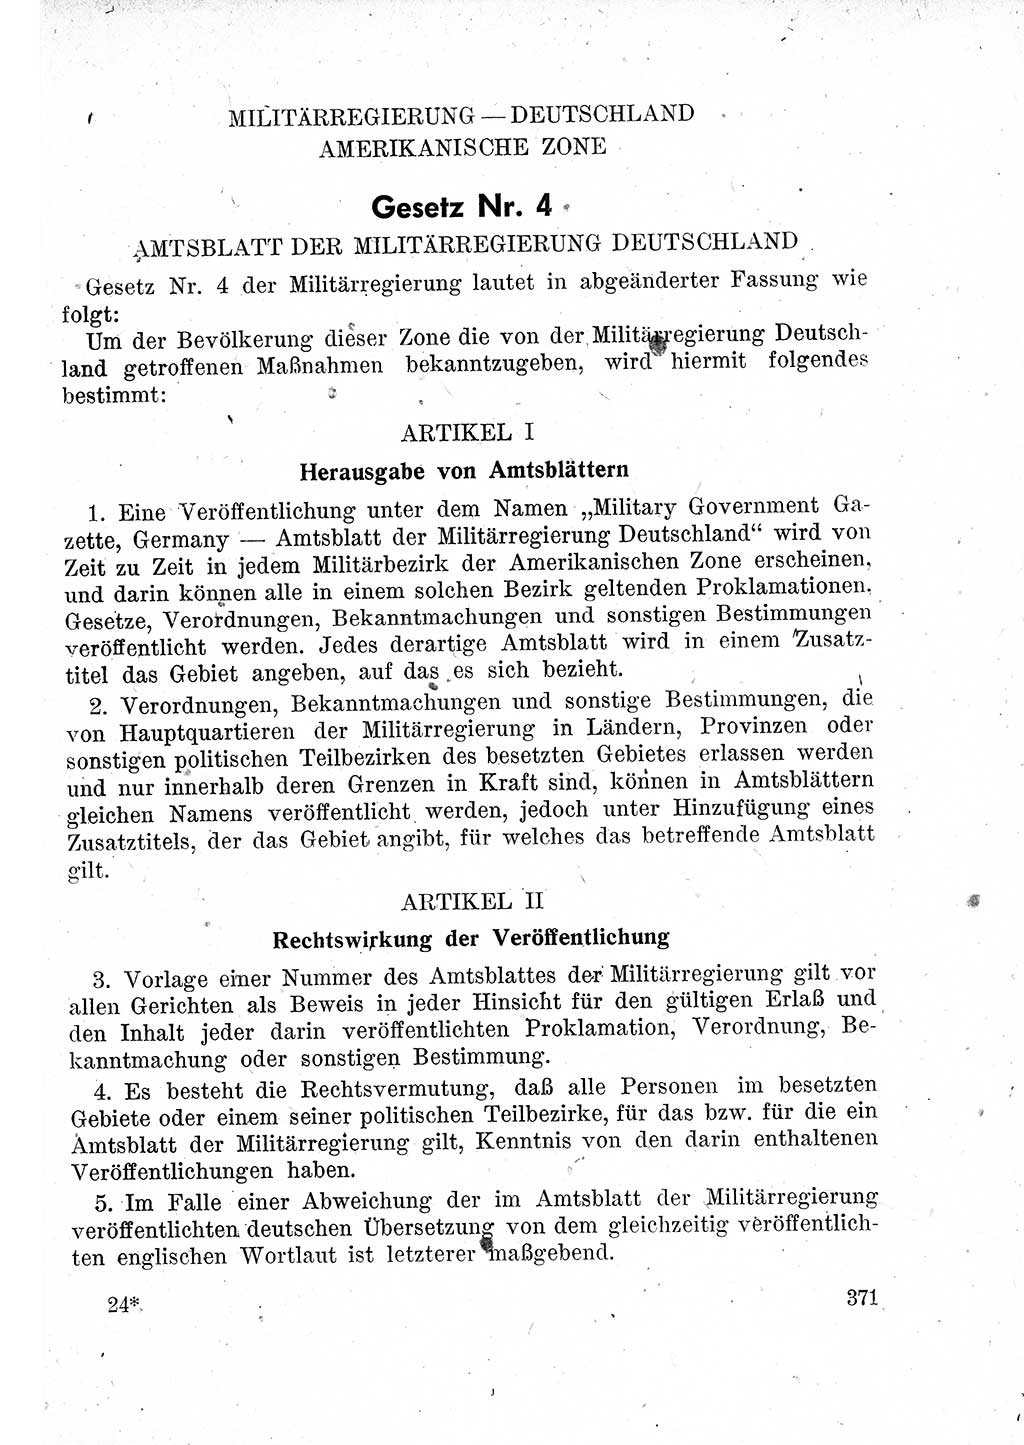 Das Recht der Besatzungsmacht (Deutschland), Proklamationen, Deklerationen, Verordnungen, Gesetze und Bekanntmachungen 1947, Seite 371 (R. Bes. Dtl. 1947, S. 371)